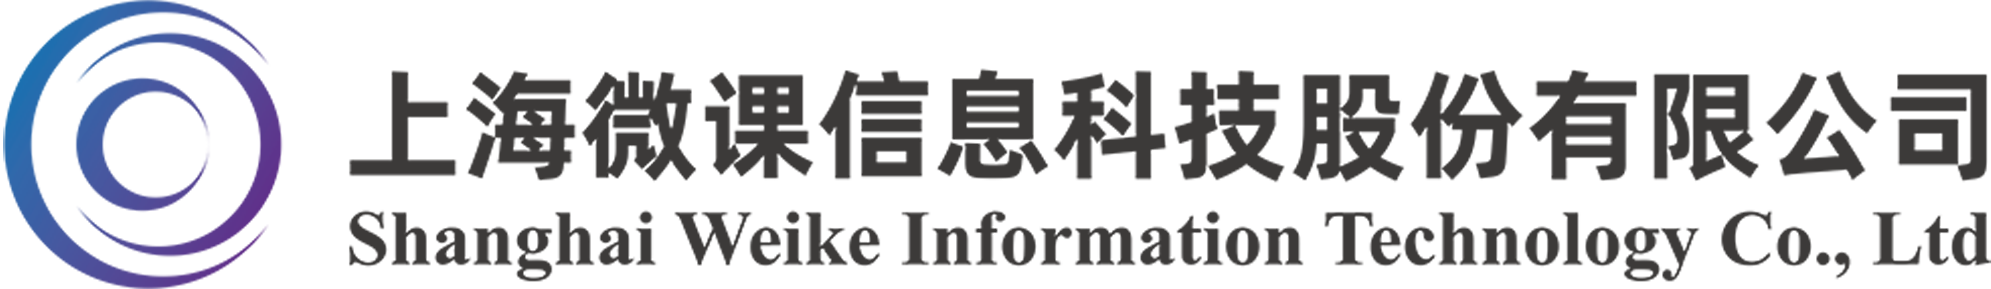 上海微课信息科技股份有限公司